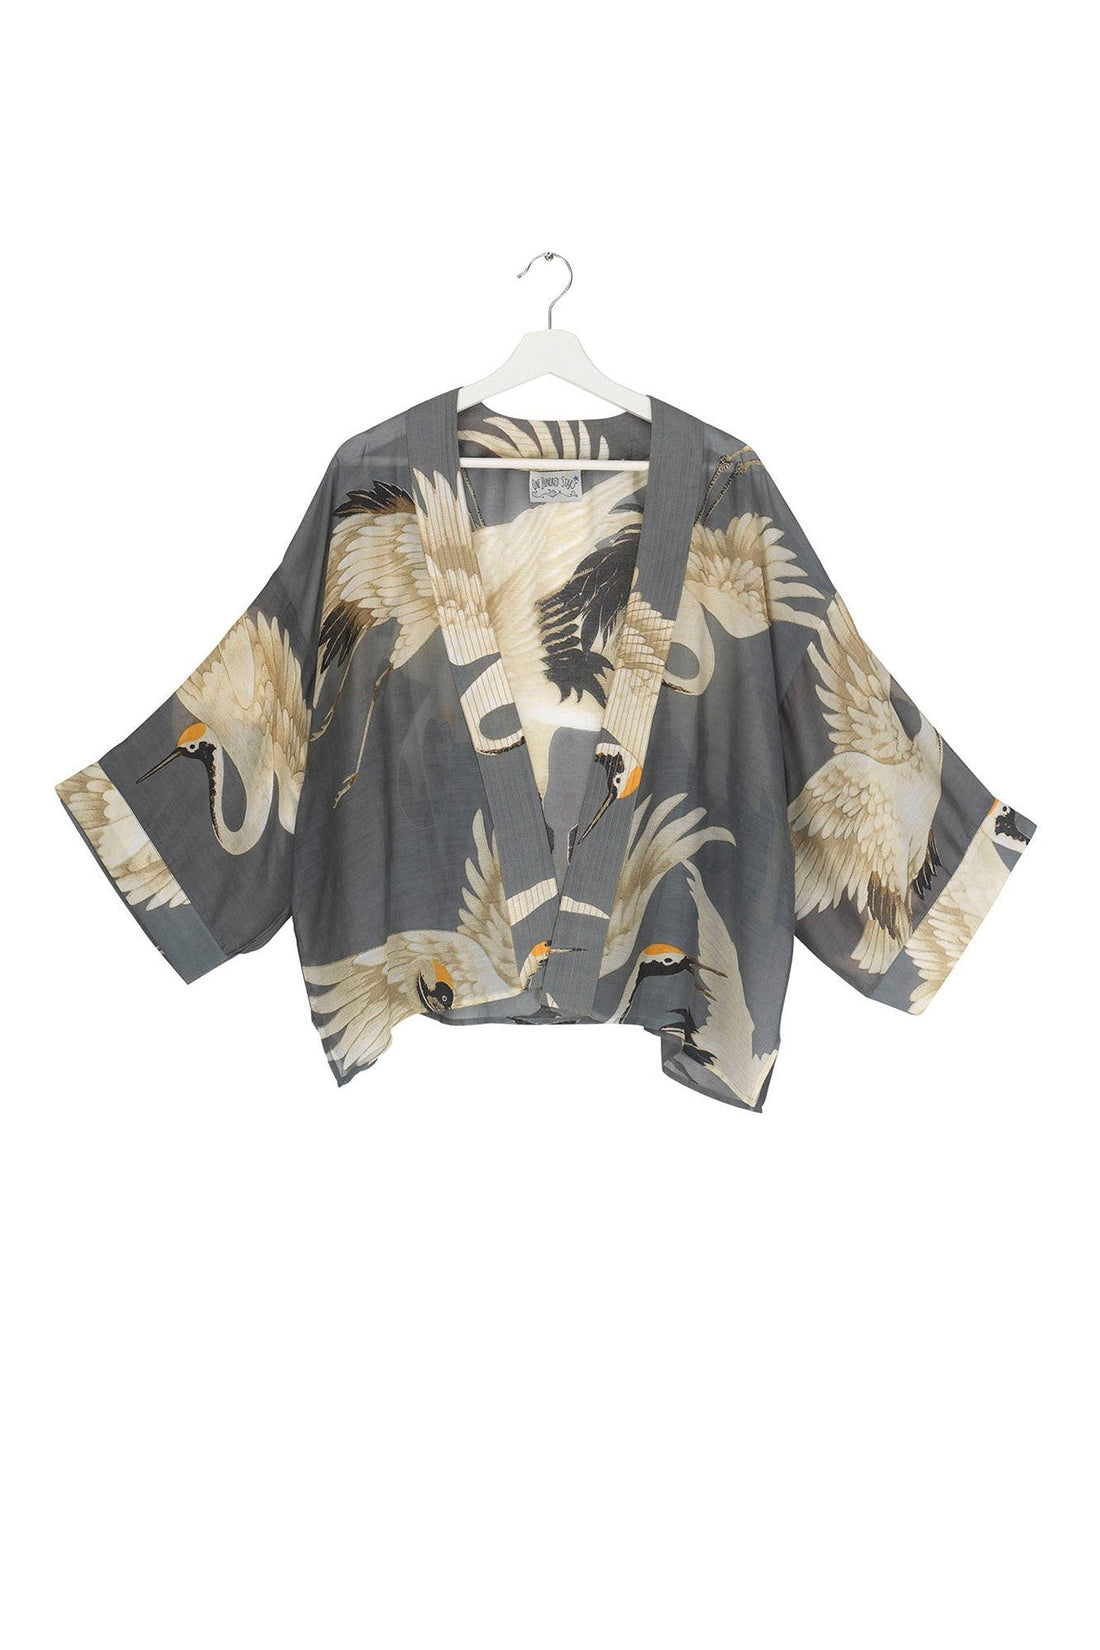 Short Kimono in Stork Print- Slate Grey Coats & Jackets One Hundred Stars